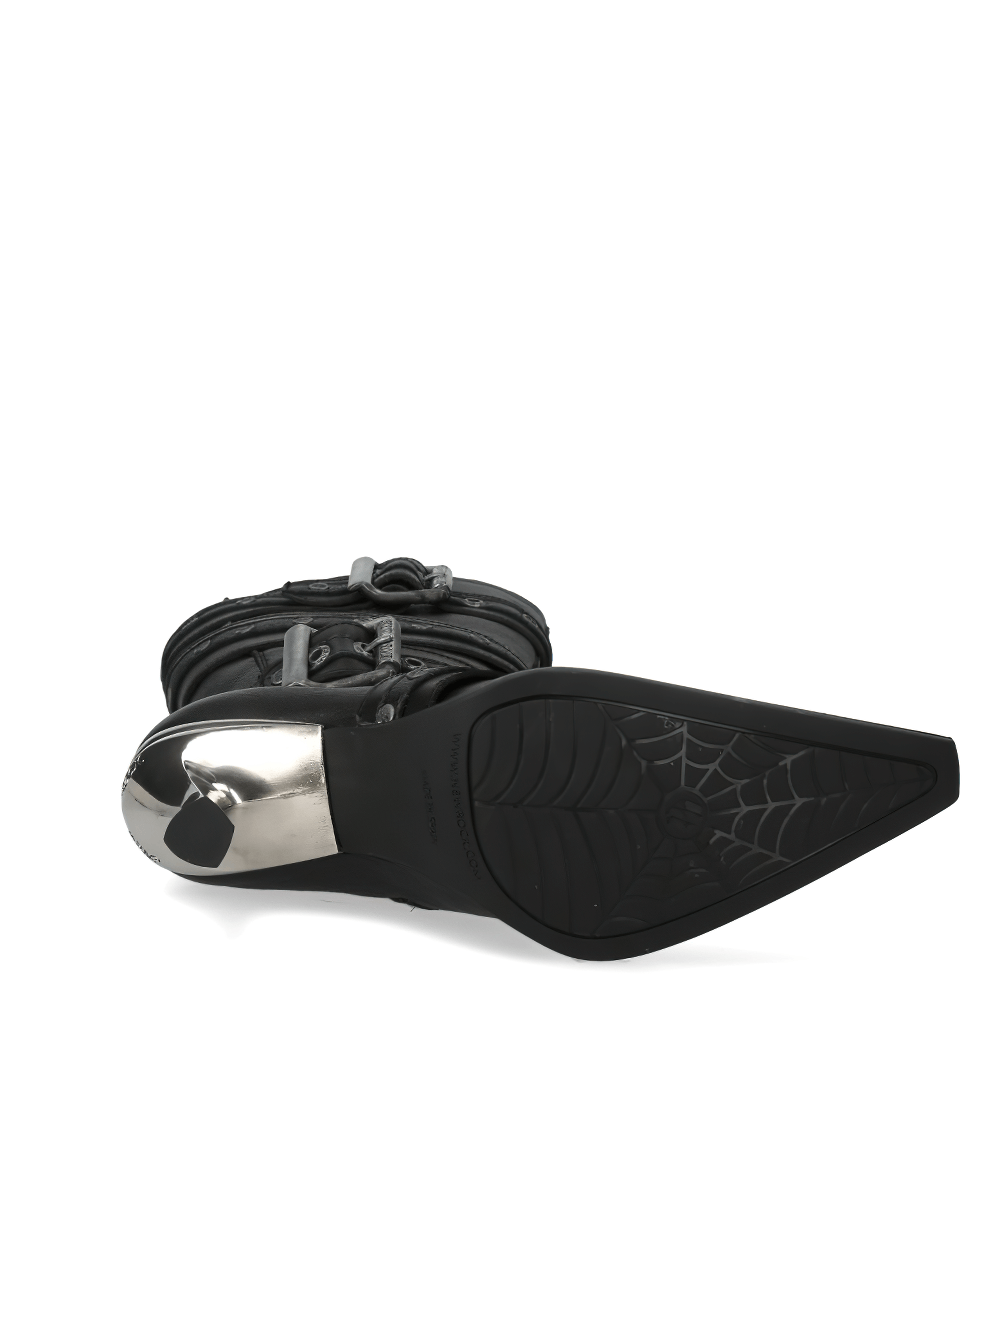 Botas de tacón alto de cuero negro con detalle de tiras NEW ROCK